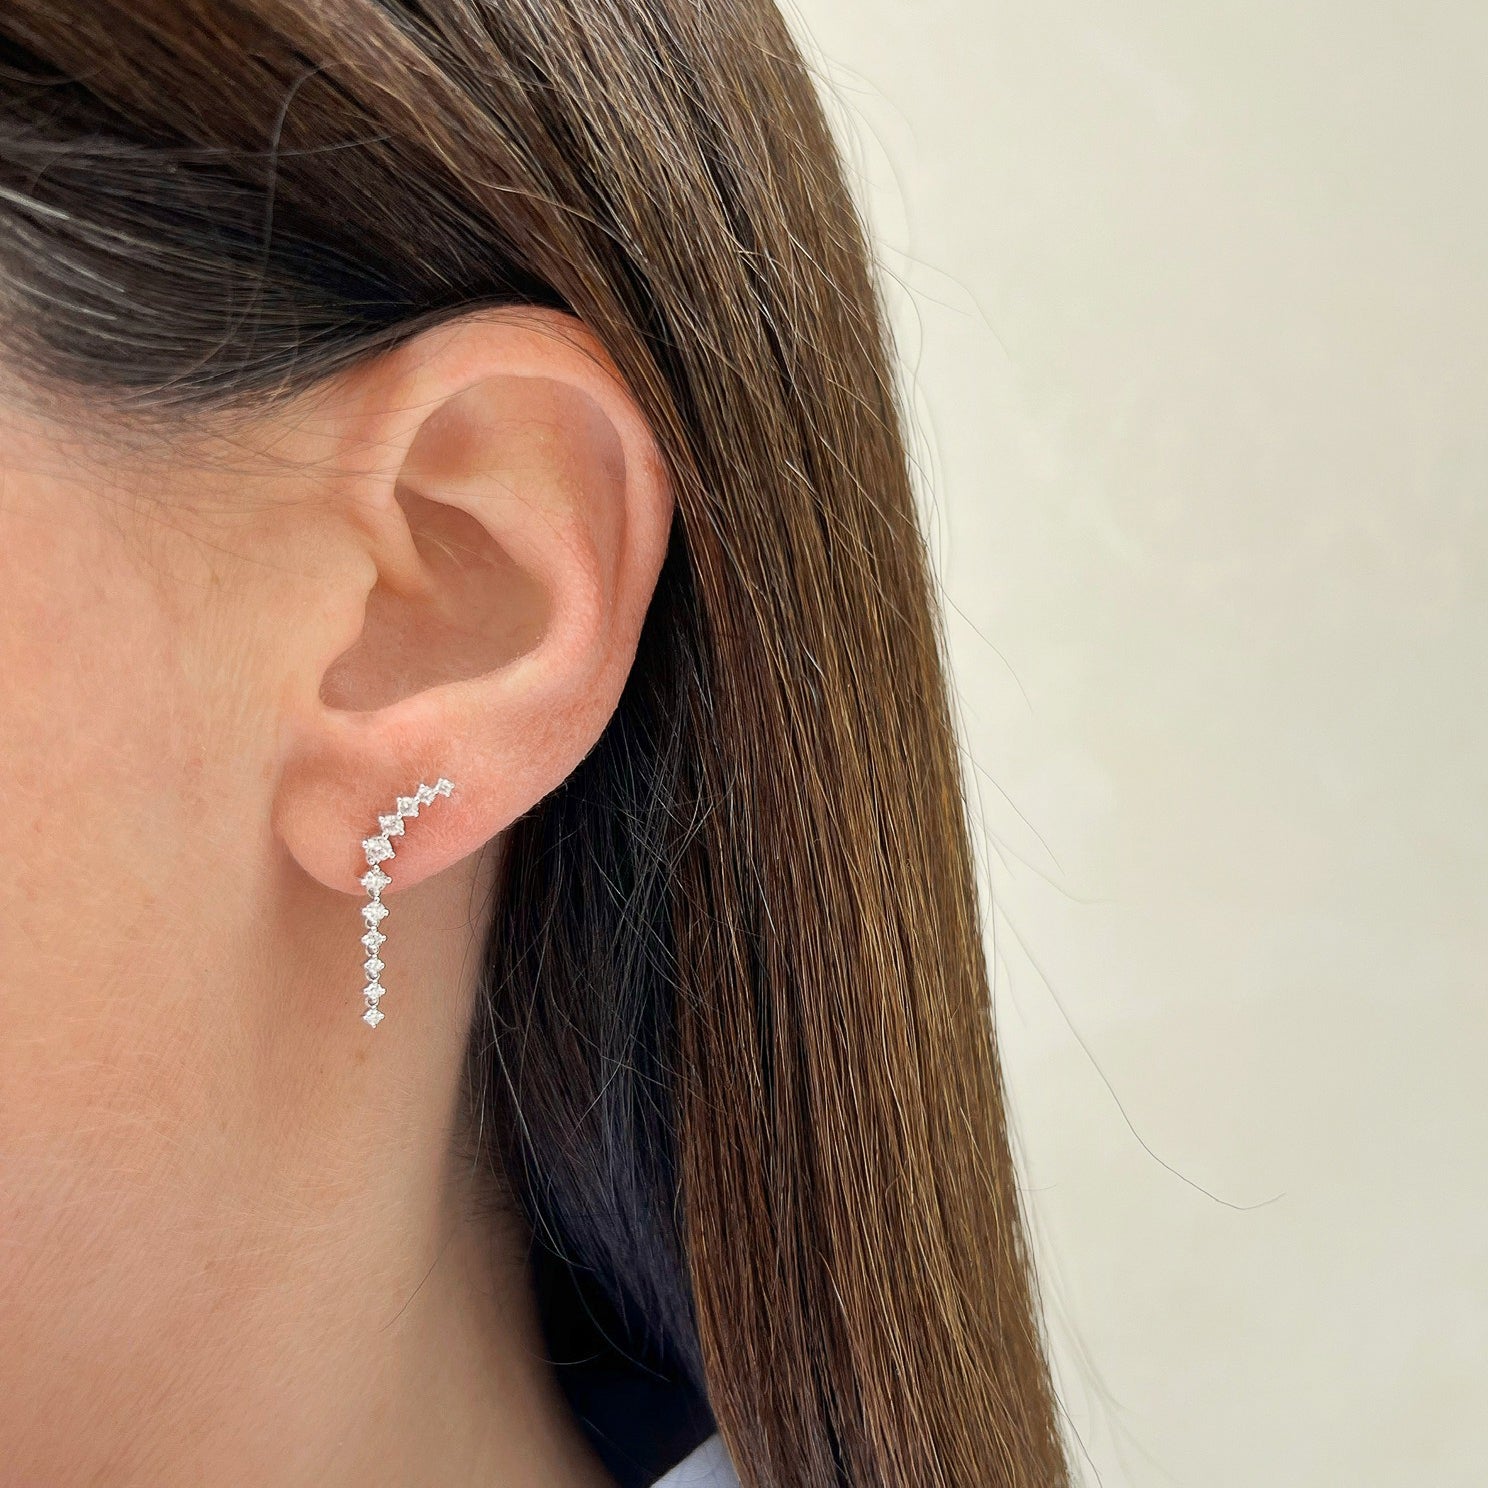 Prong Set Diamond Waterfall Earring in 14k white gold styled on ear lobe of model